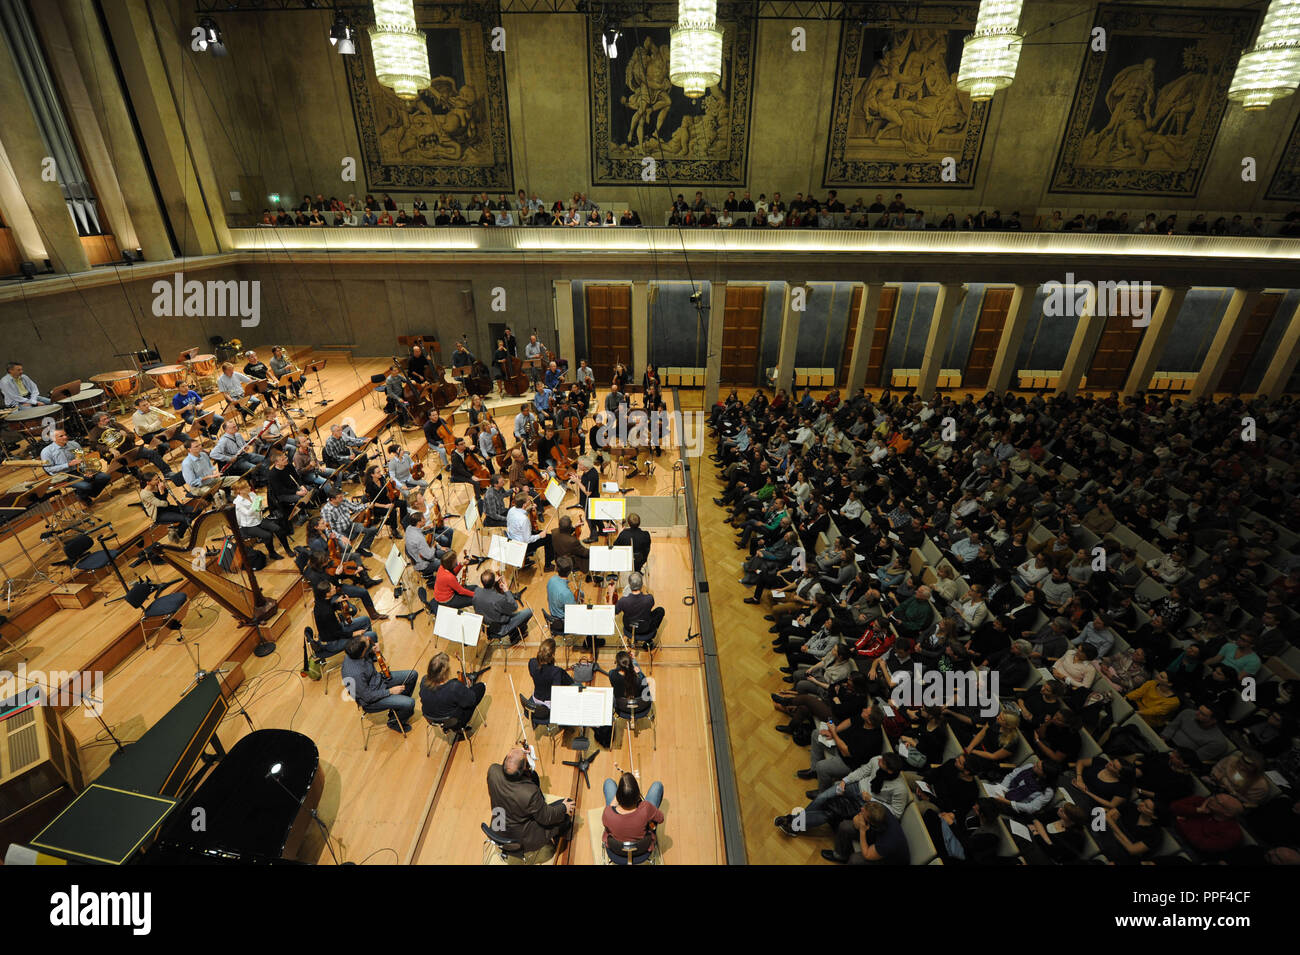 El ensayo final de la BR Symphony Orchestra, bajo la dirección de Simon Rattle, en el Salón de Hércules. Este ensayo sólo se invitó a los estudiantes. Foto de stock